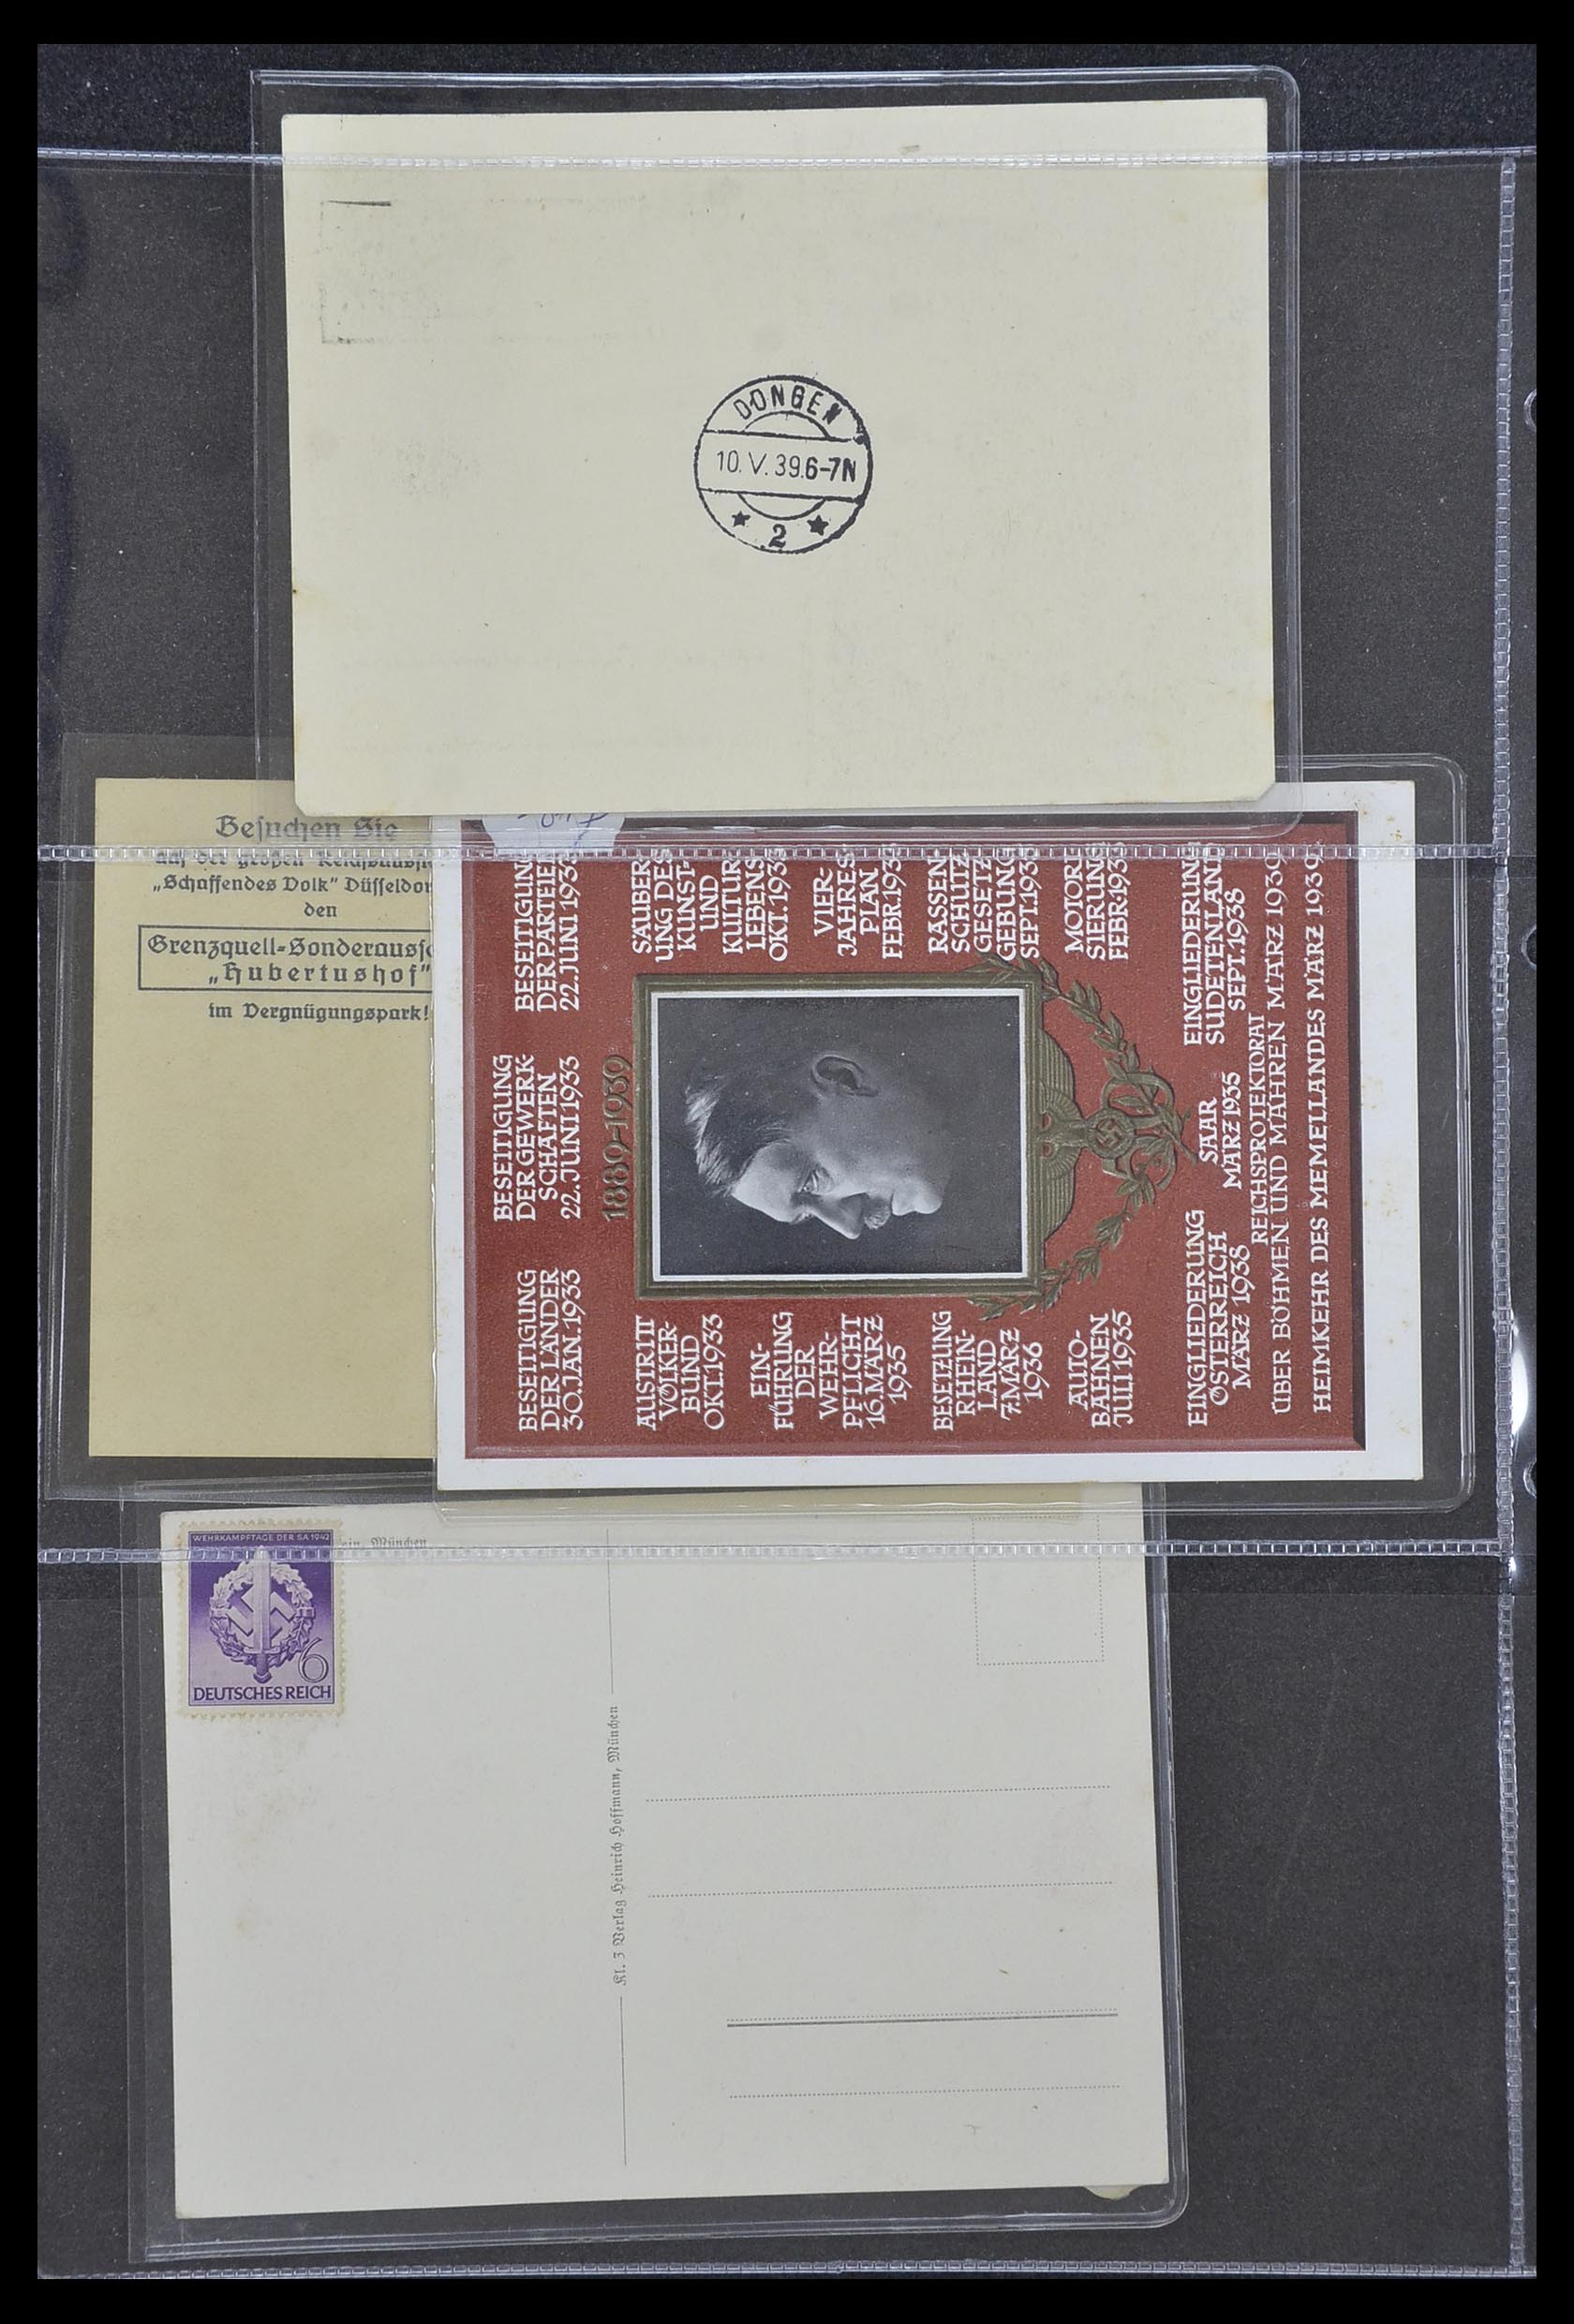 33995 028 - Postzegelverzameling 33995 Duitsland propaganda kaarten.